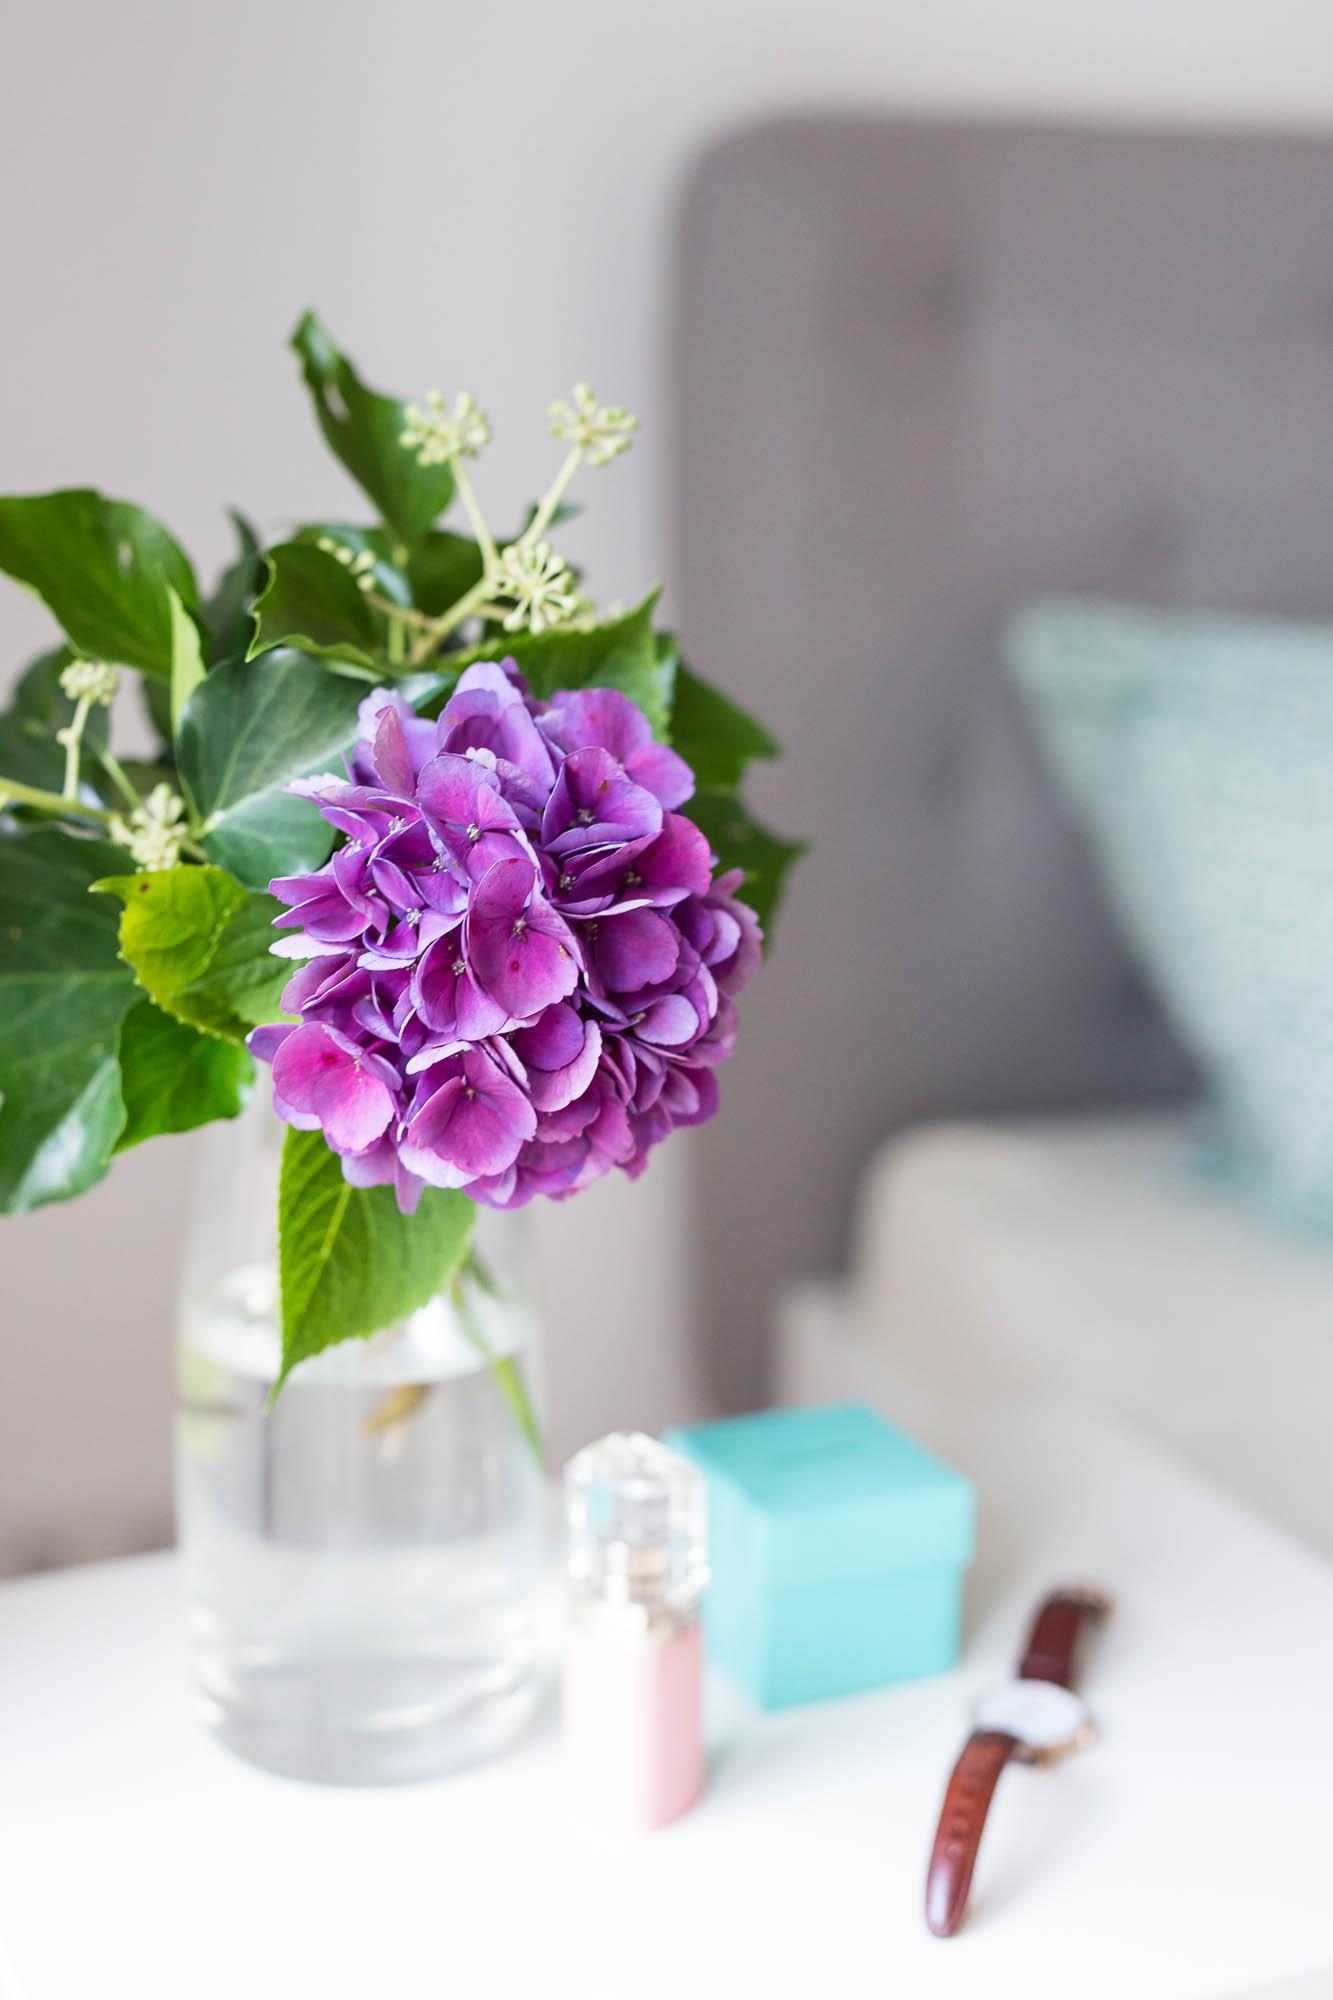 Hortensien sind auch in der Vase ein Highlight #hortensienwoche #hortensien #dekoration #vase #lila #blüte